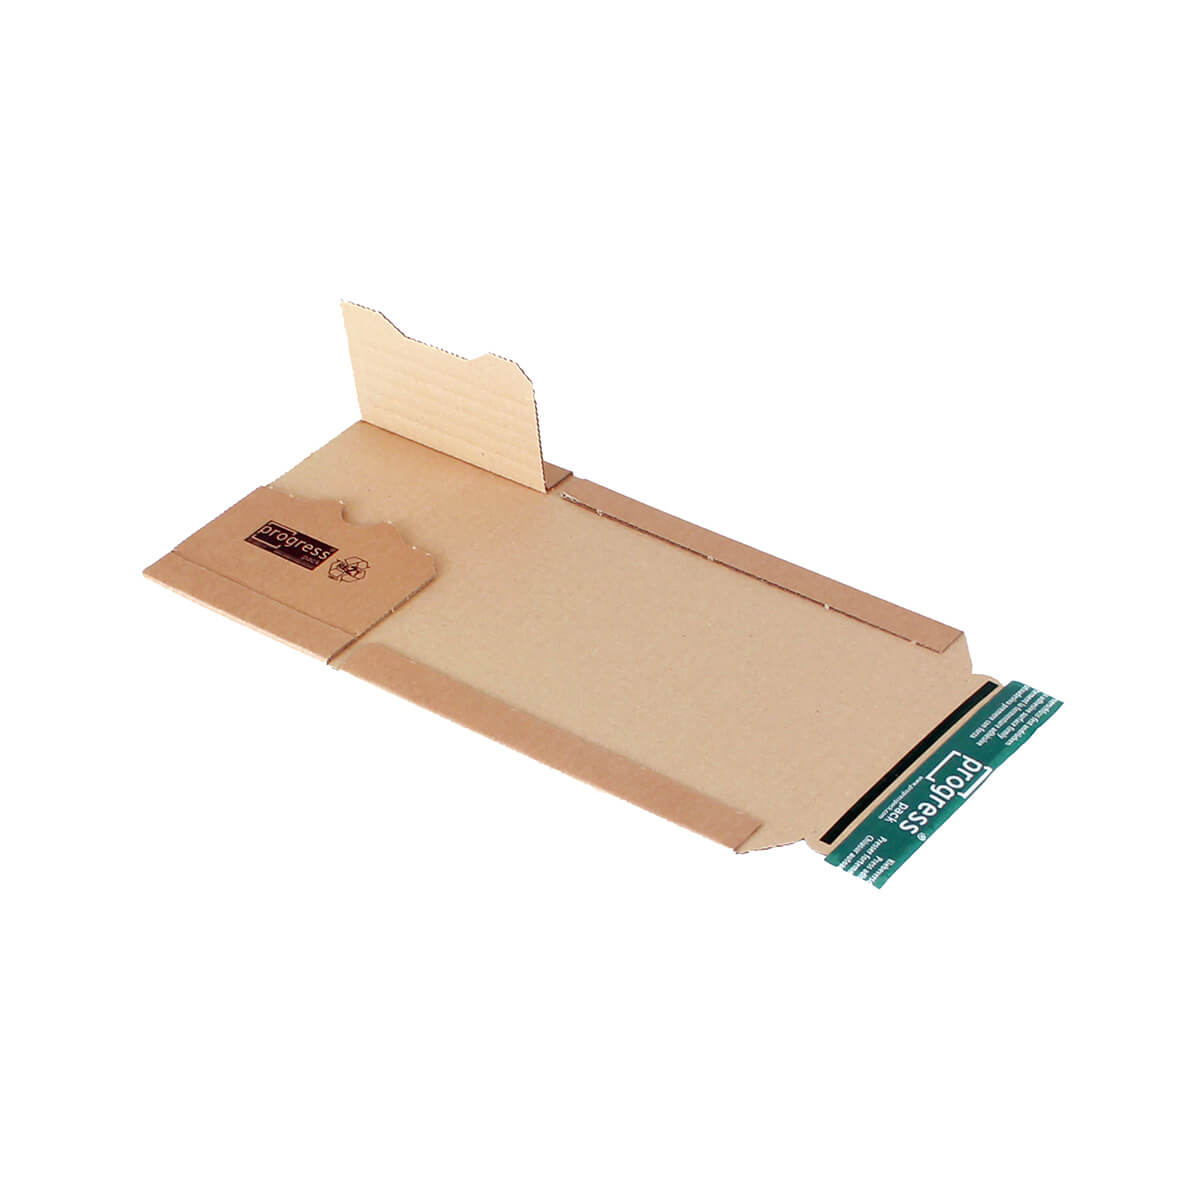 Buchverpackung 147x129x55-0 mm Pappe selbstklebend + Aufreißfaden - progressPACK